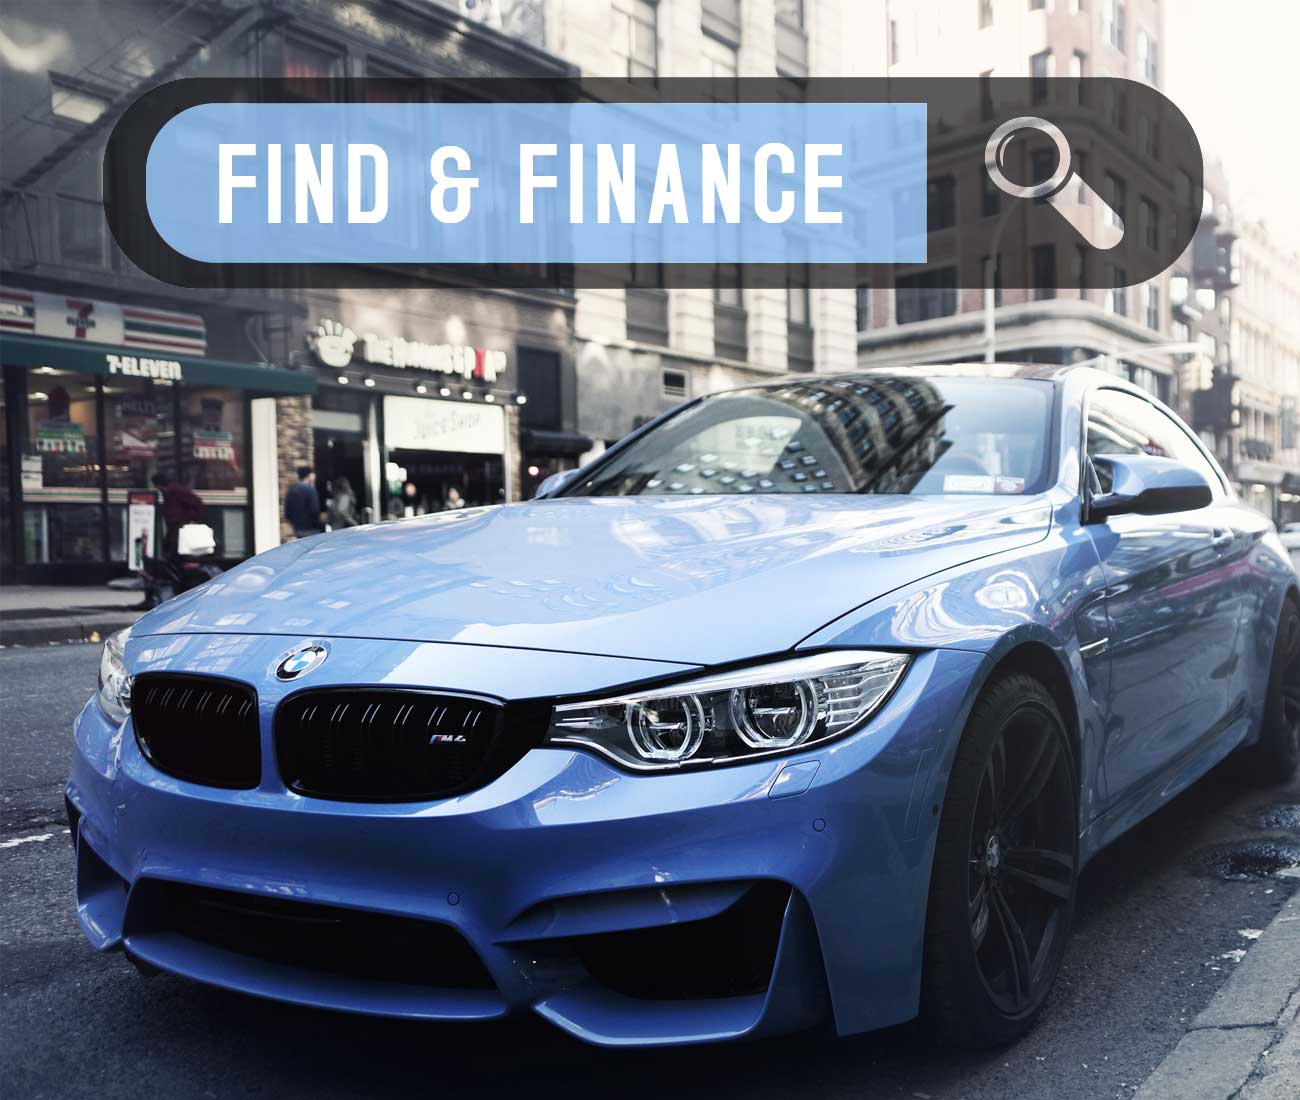 Find & Finance